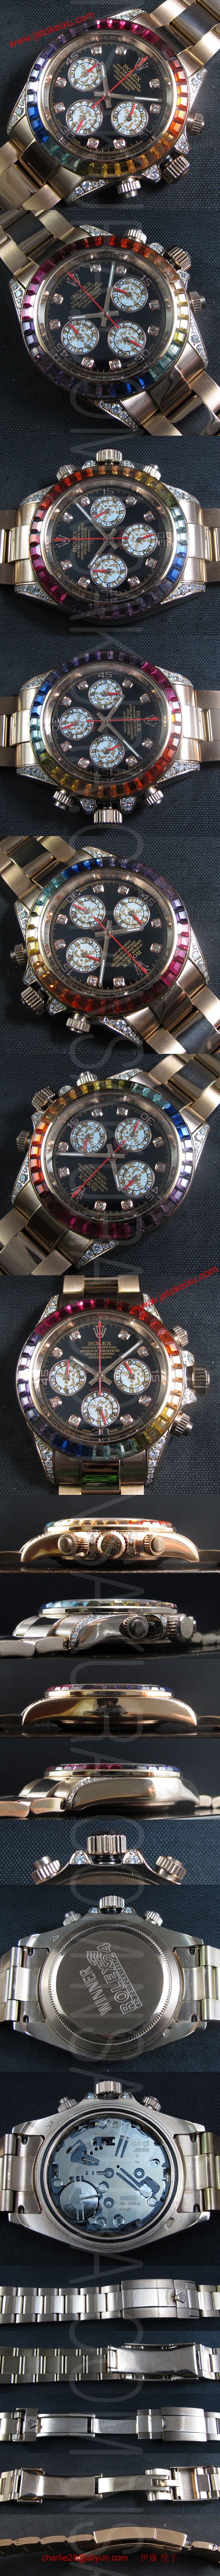 ロレックス 20140225104210 スーパーコピー時計